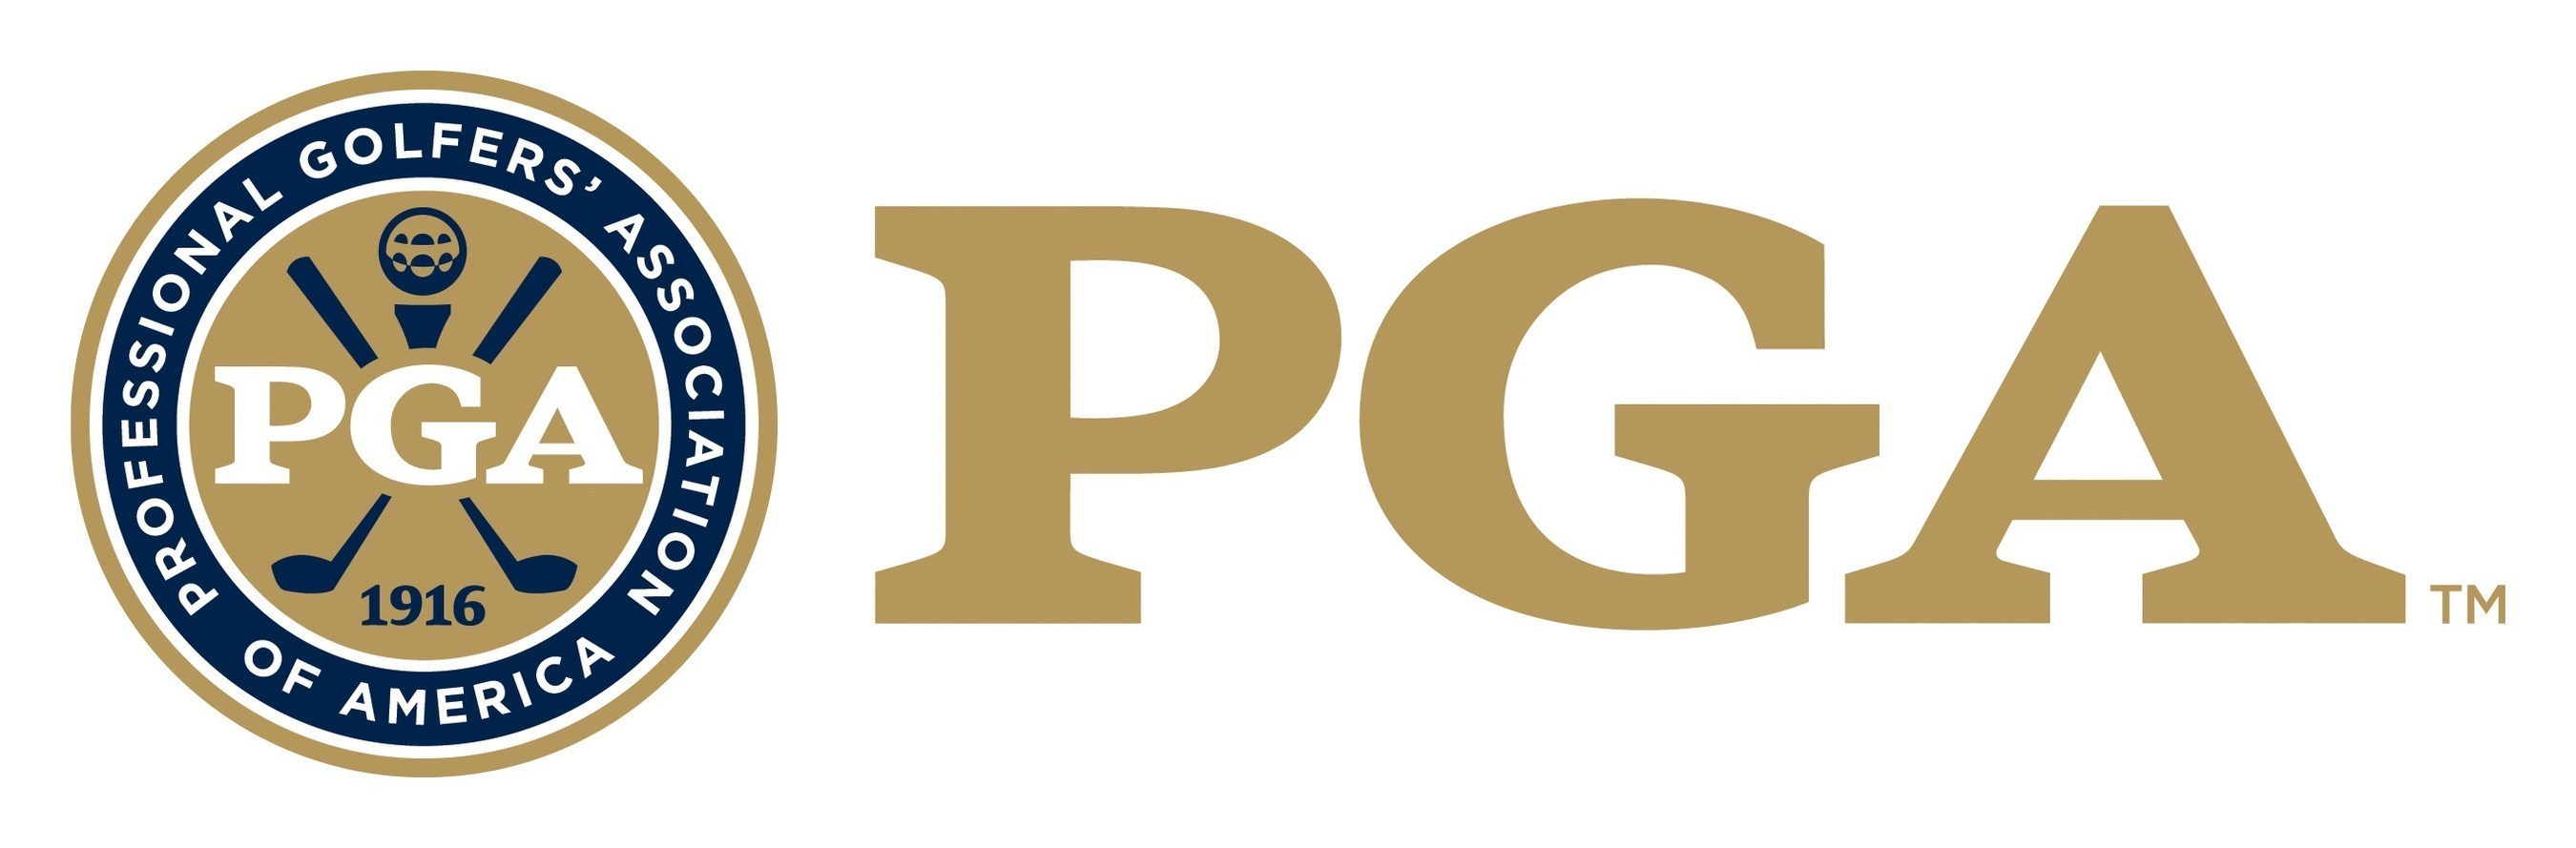 PGA of America (www.pga.com)